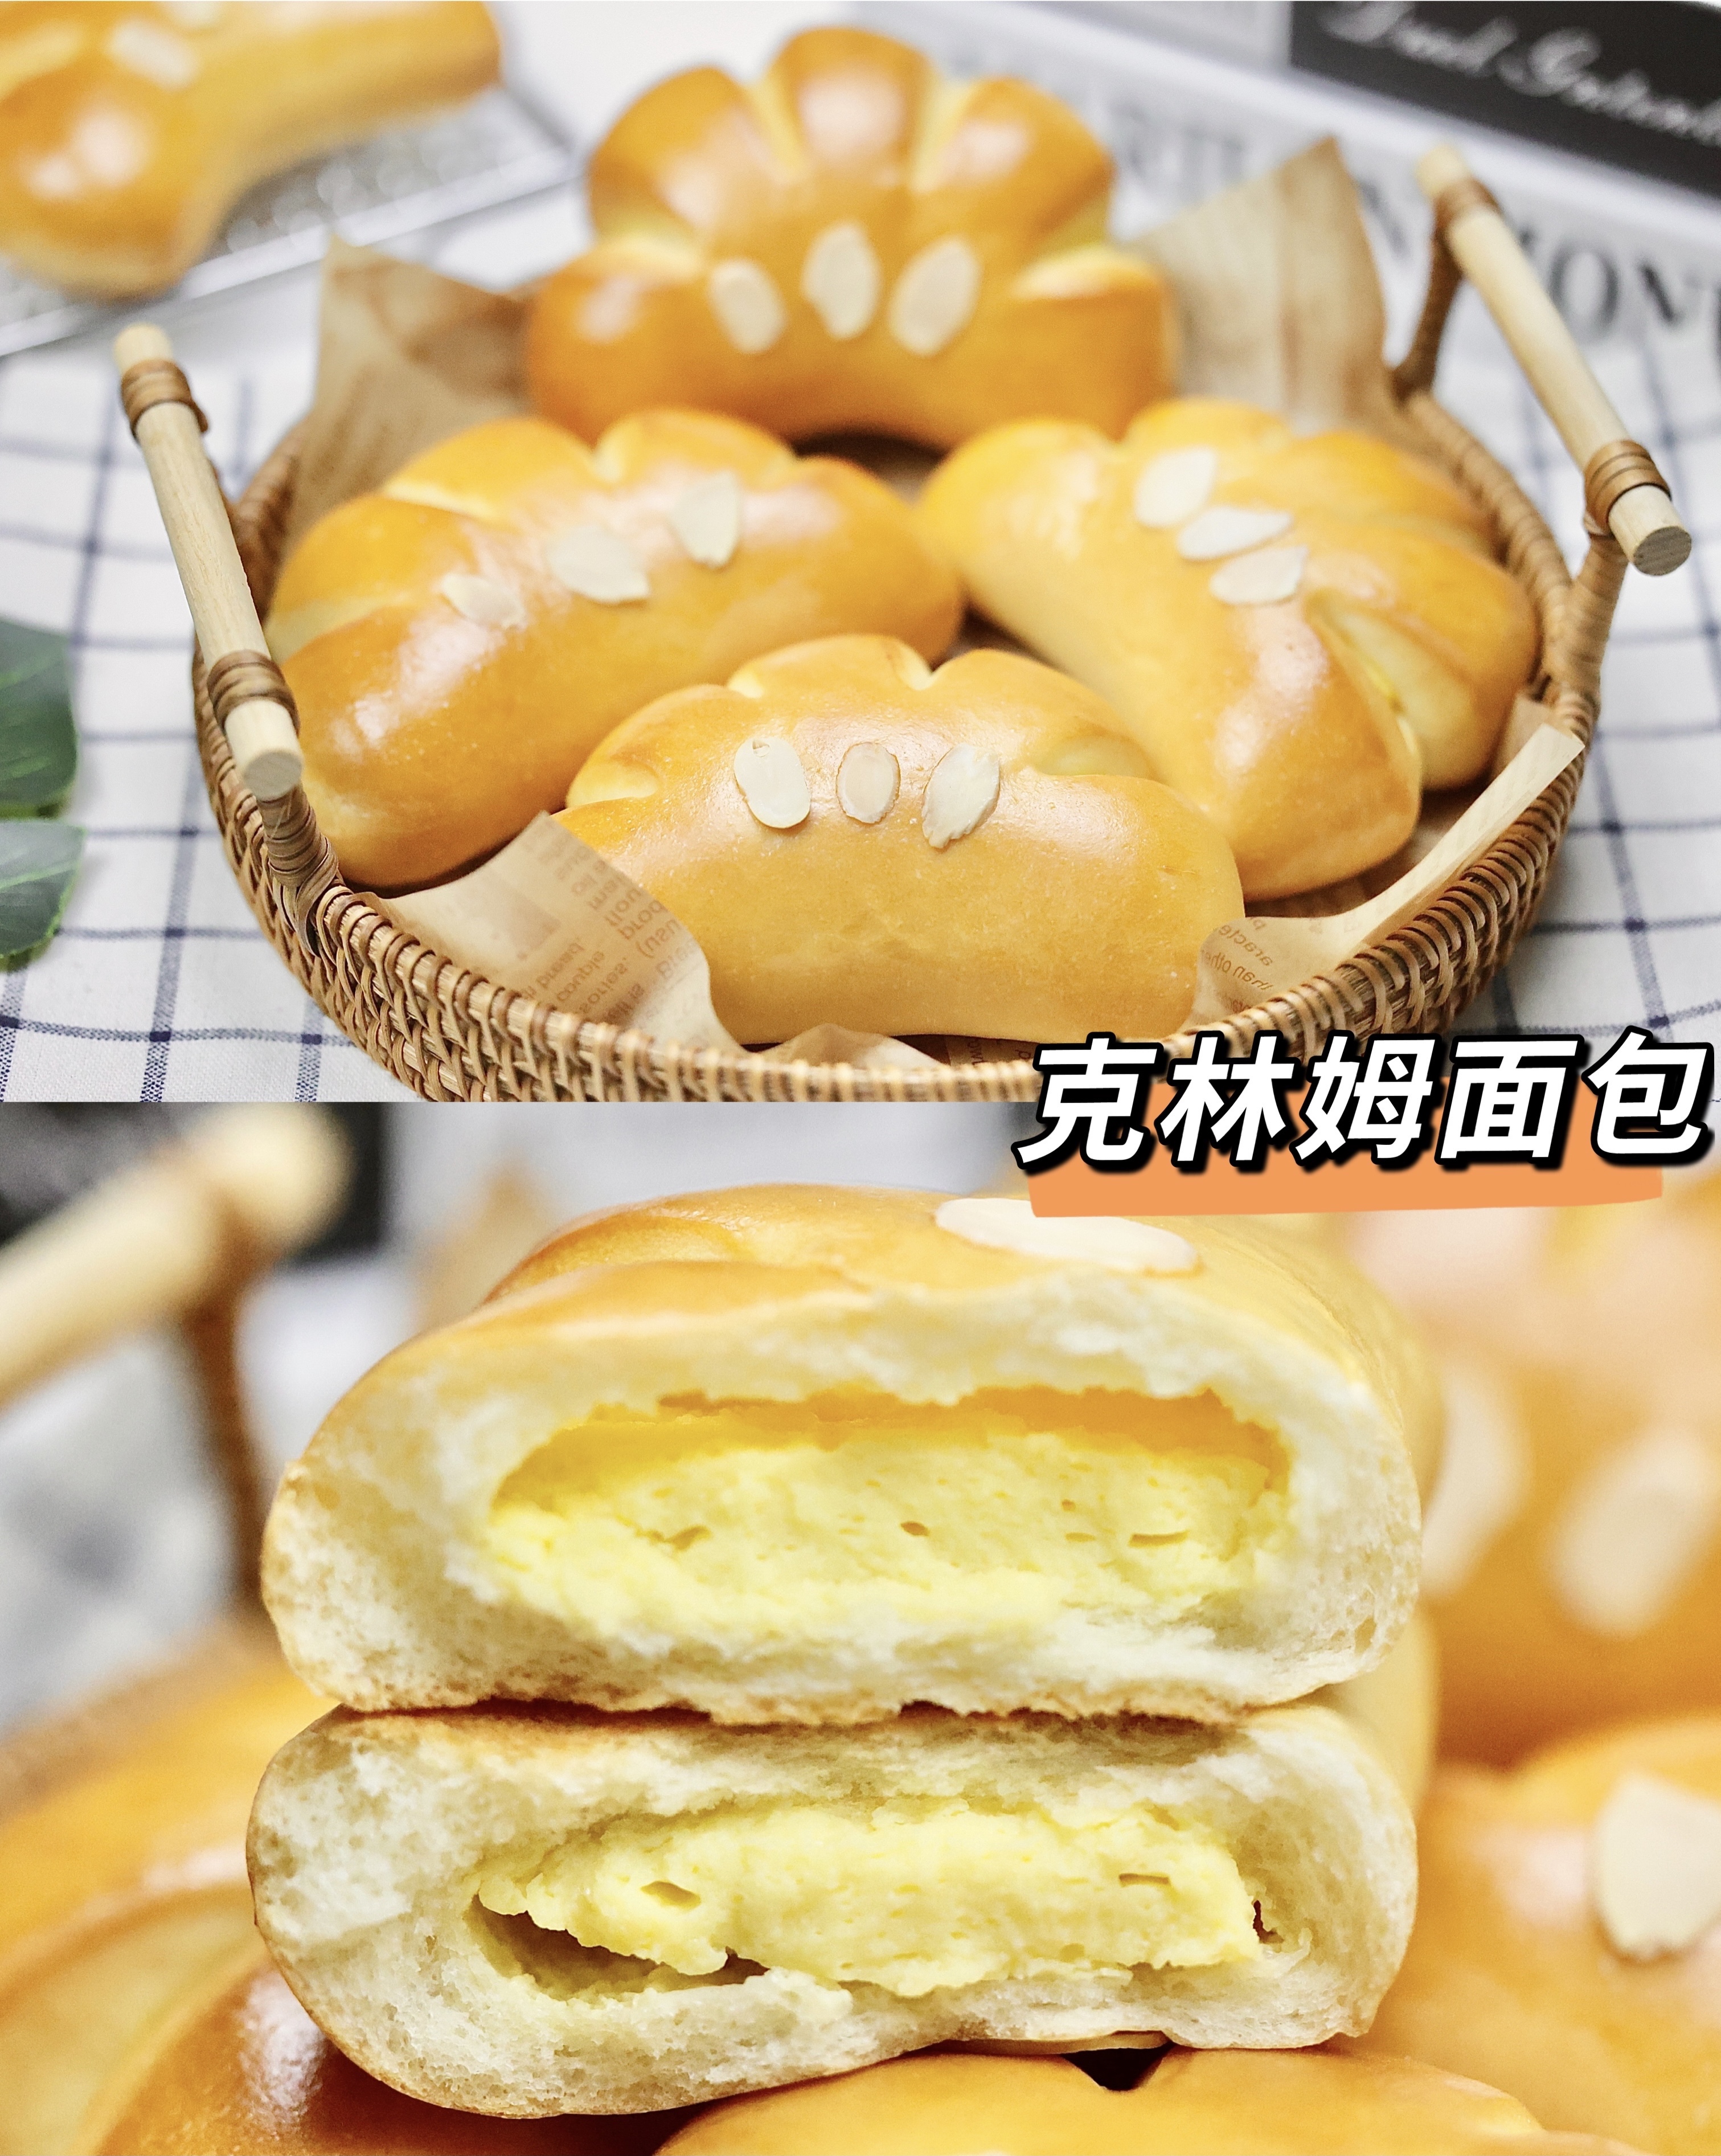 日式克林姆面包/卡士达软面包的做法